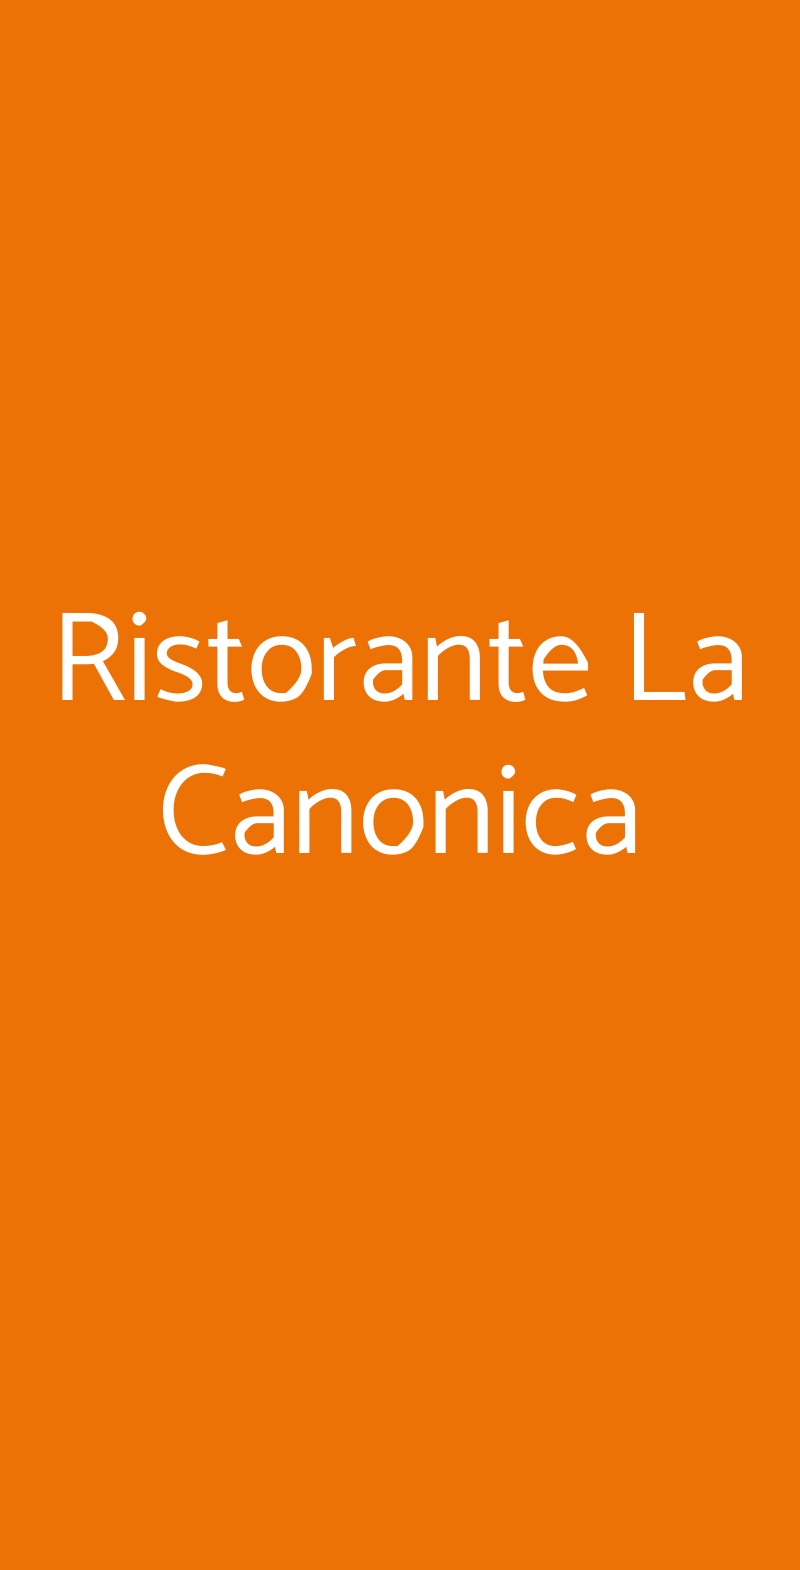 Ristorante La Canonica Roma menù 1 pagina